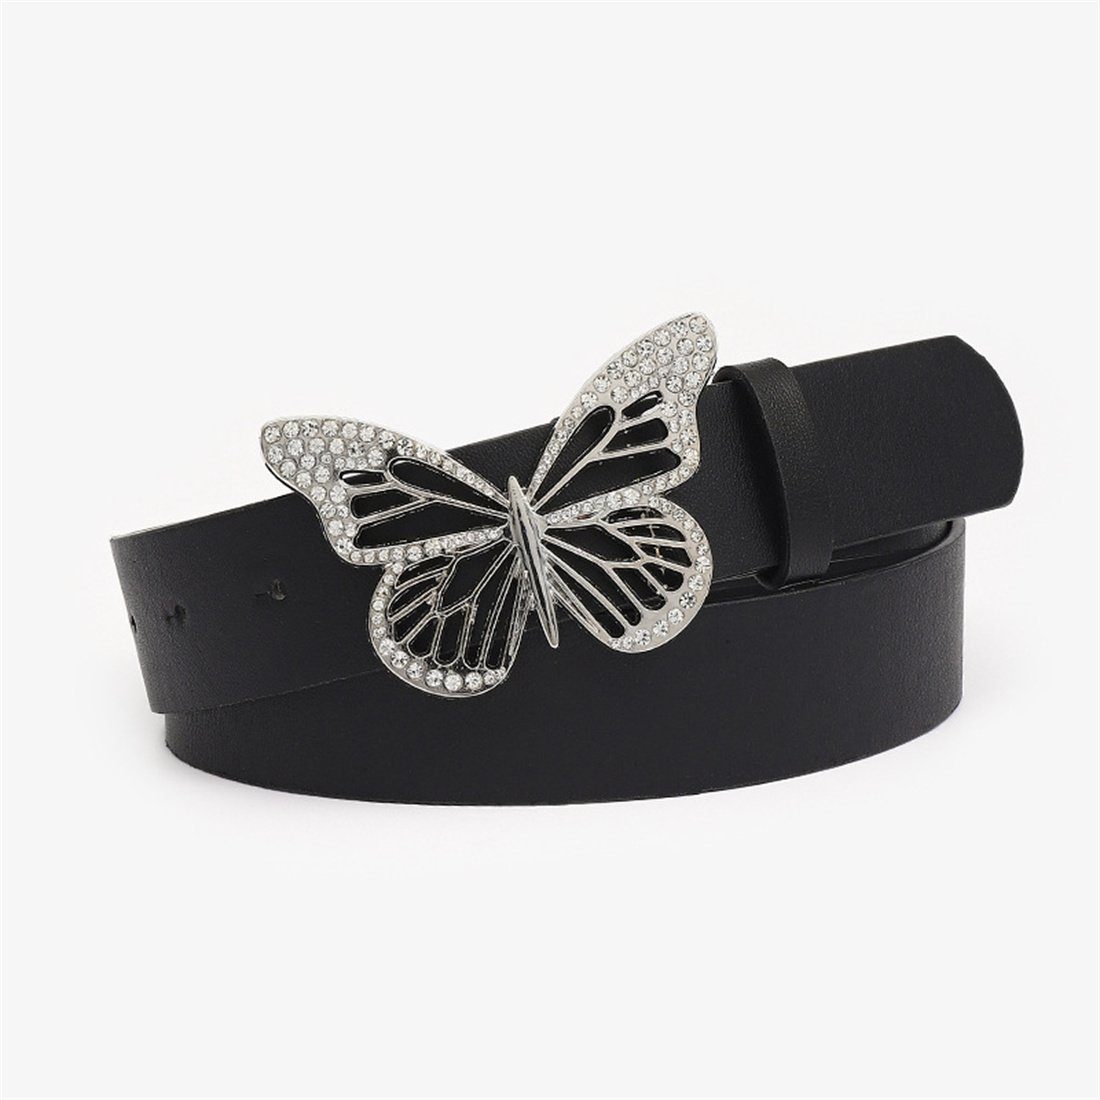 LYDMN Ledergürtel Damen Strassgürtel mit Schmetterlingsschnalle, Mode Gürtel Zubehör Schwarz